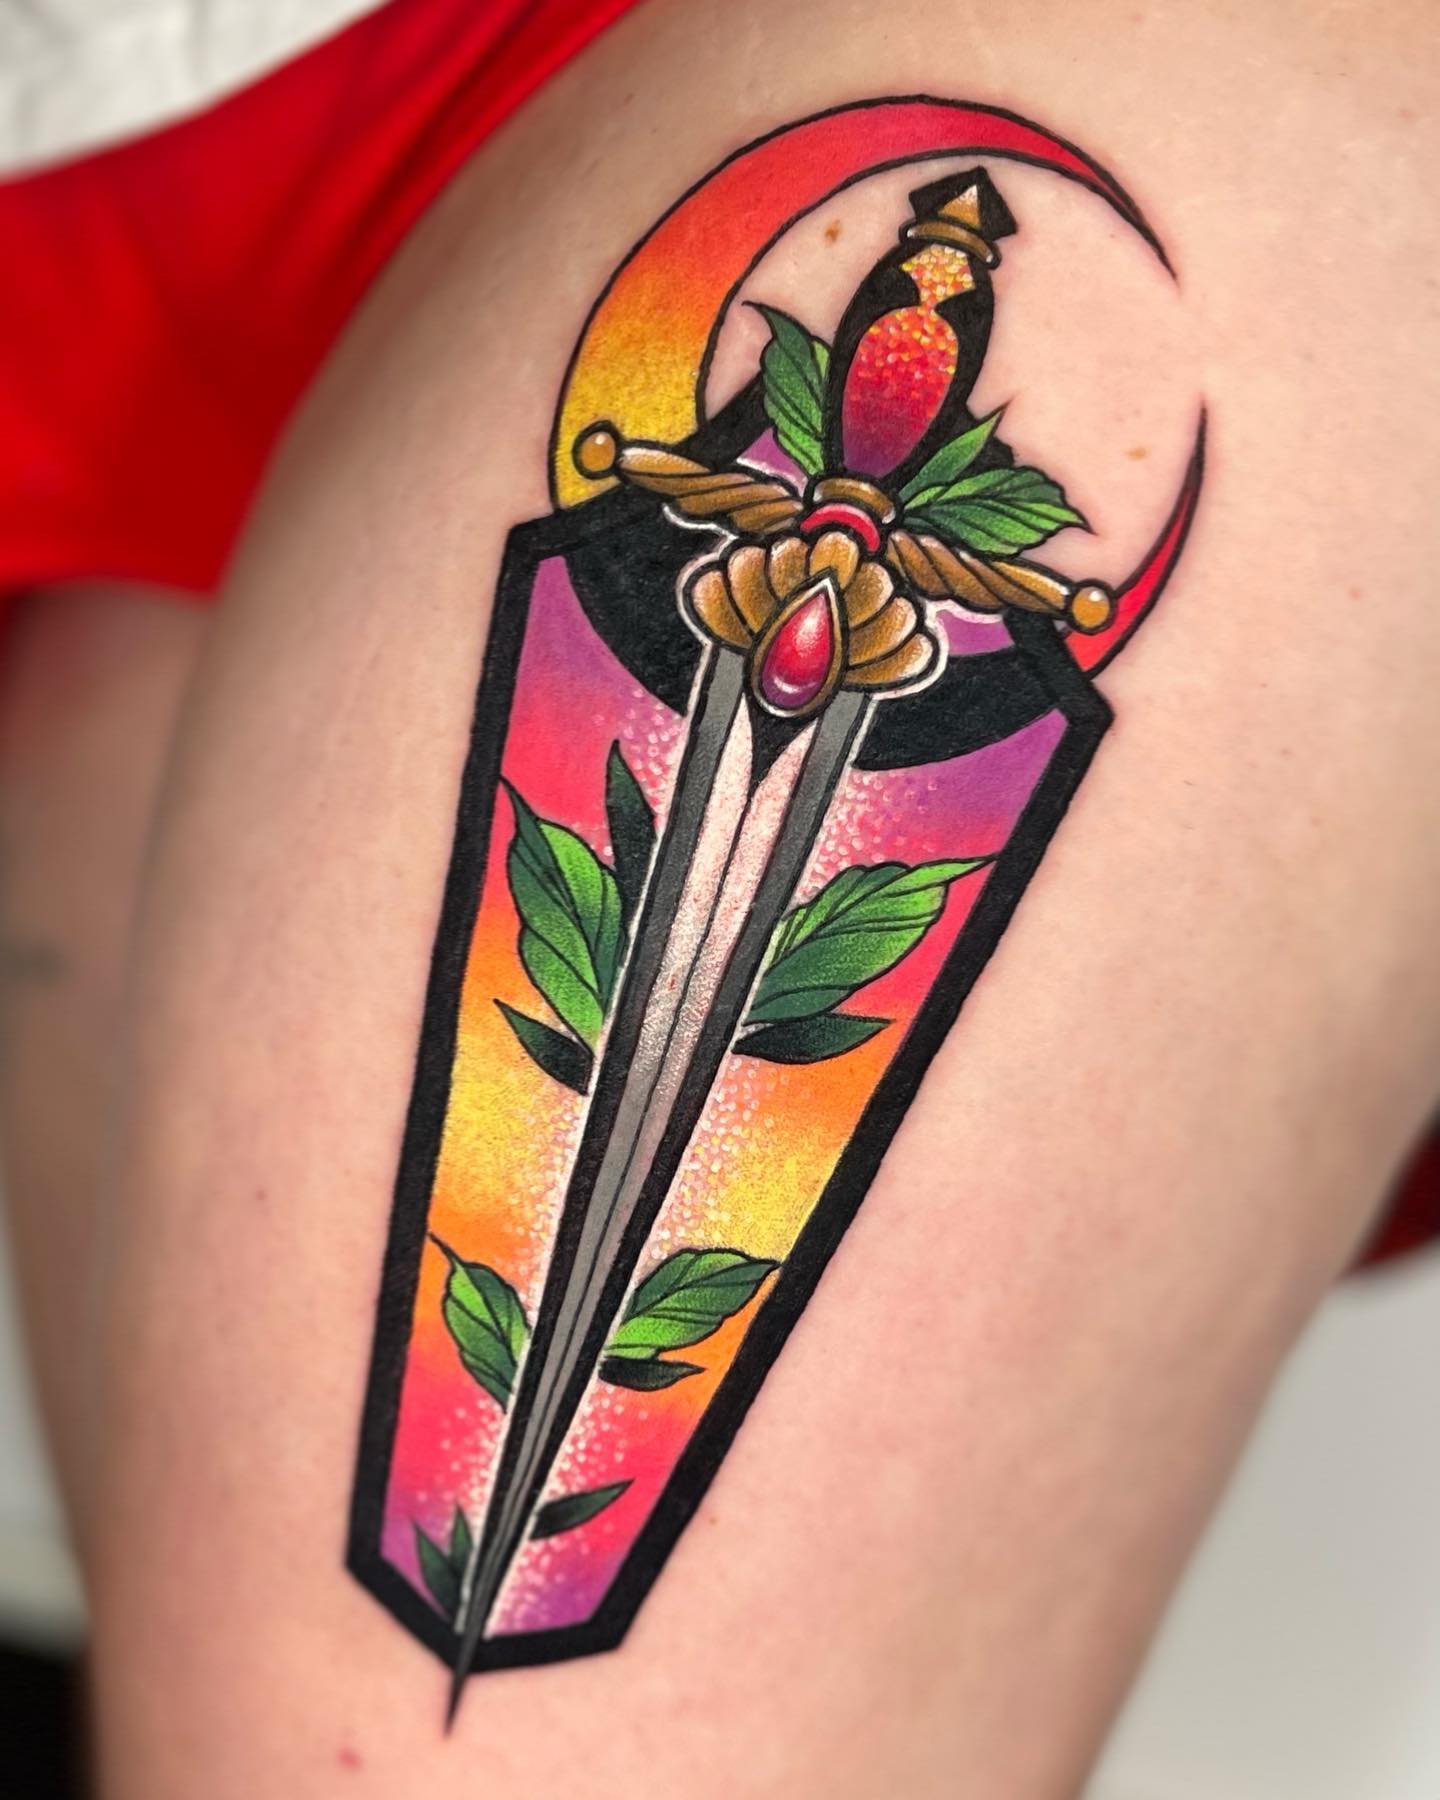 Diseño de tatuaje de brazo con daga